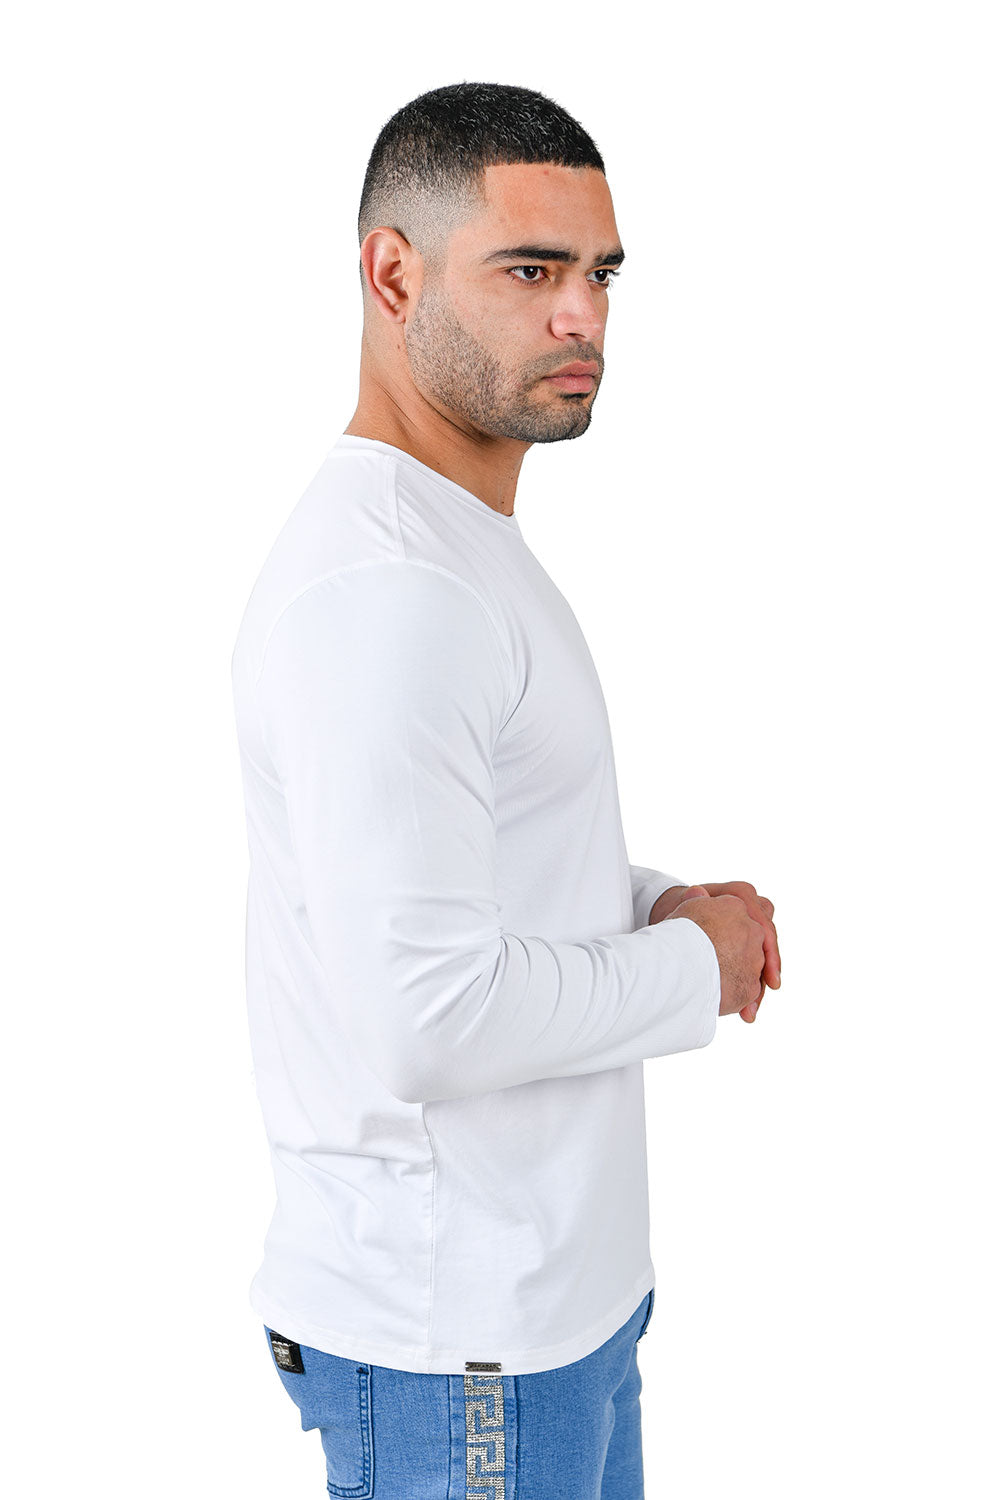 Barabas Men's Solid Color Crew Neck Sweatshirts LV127 White